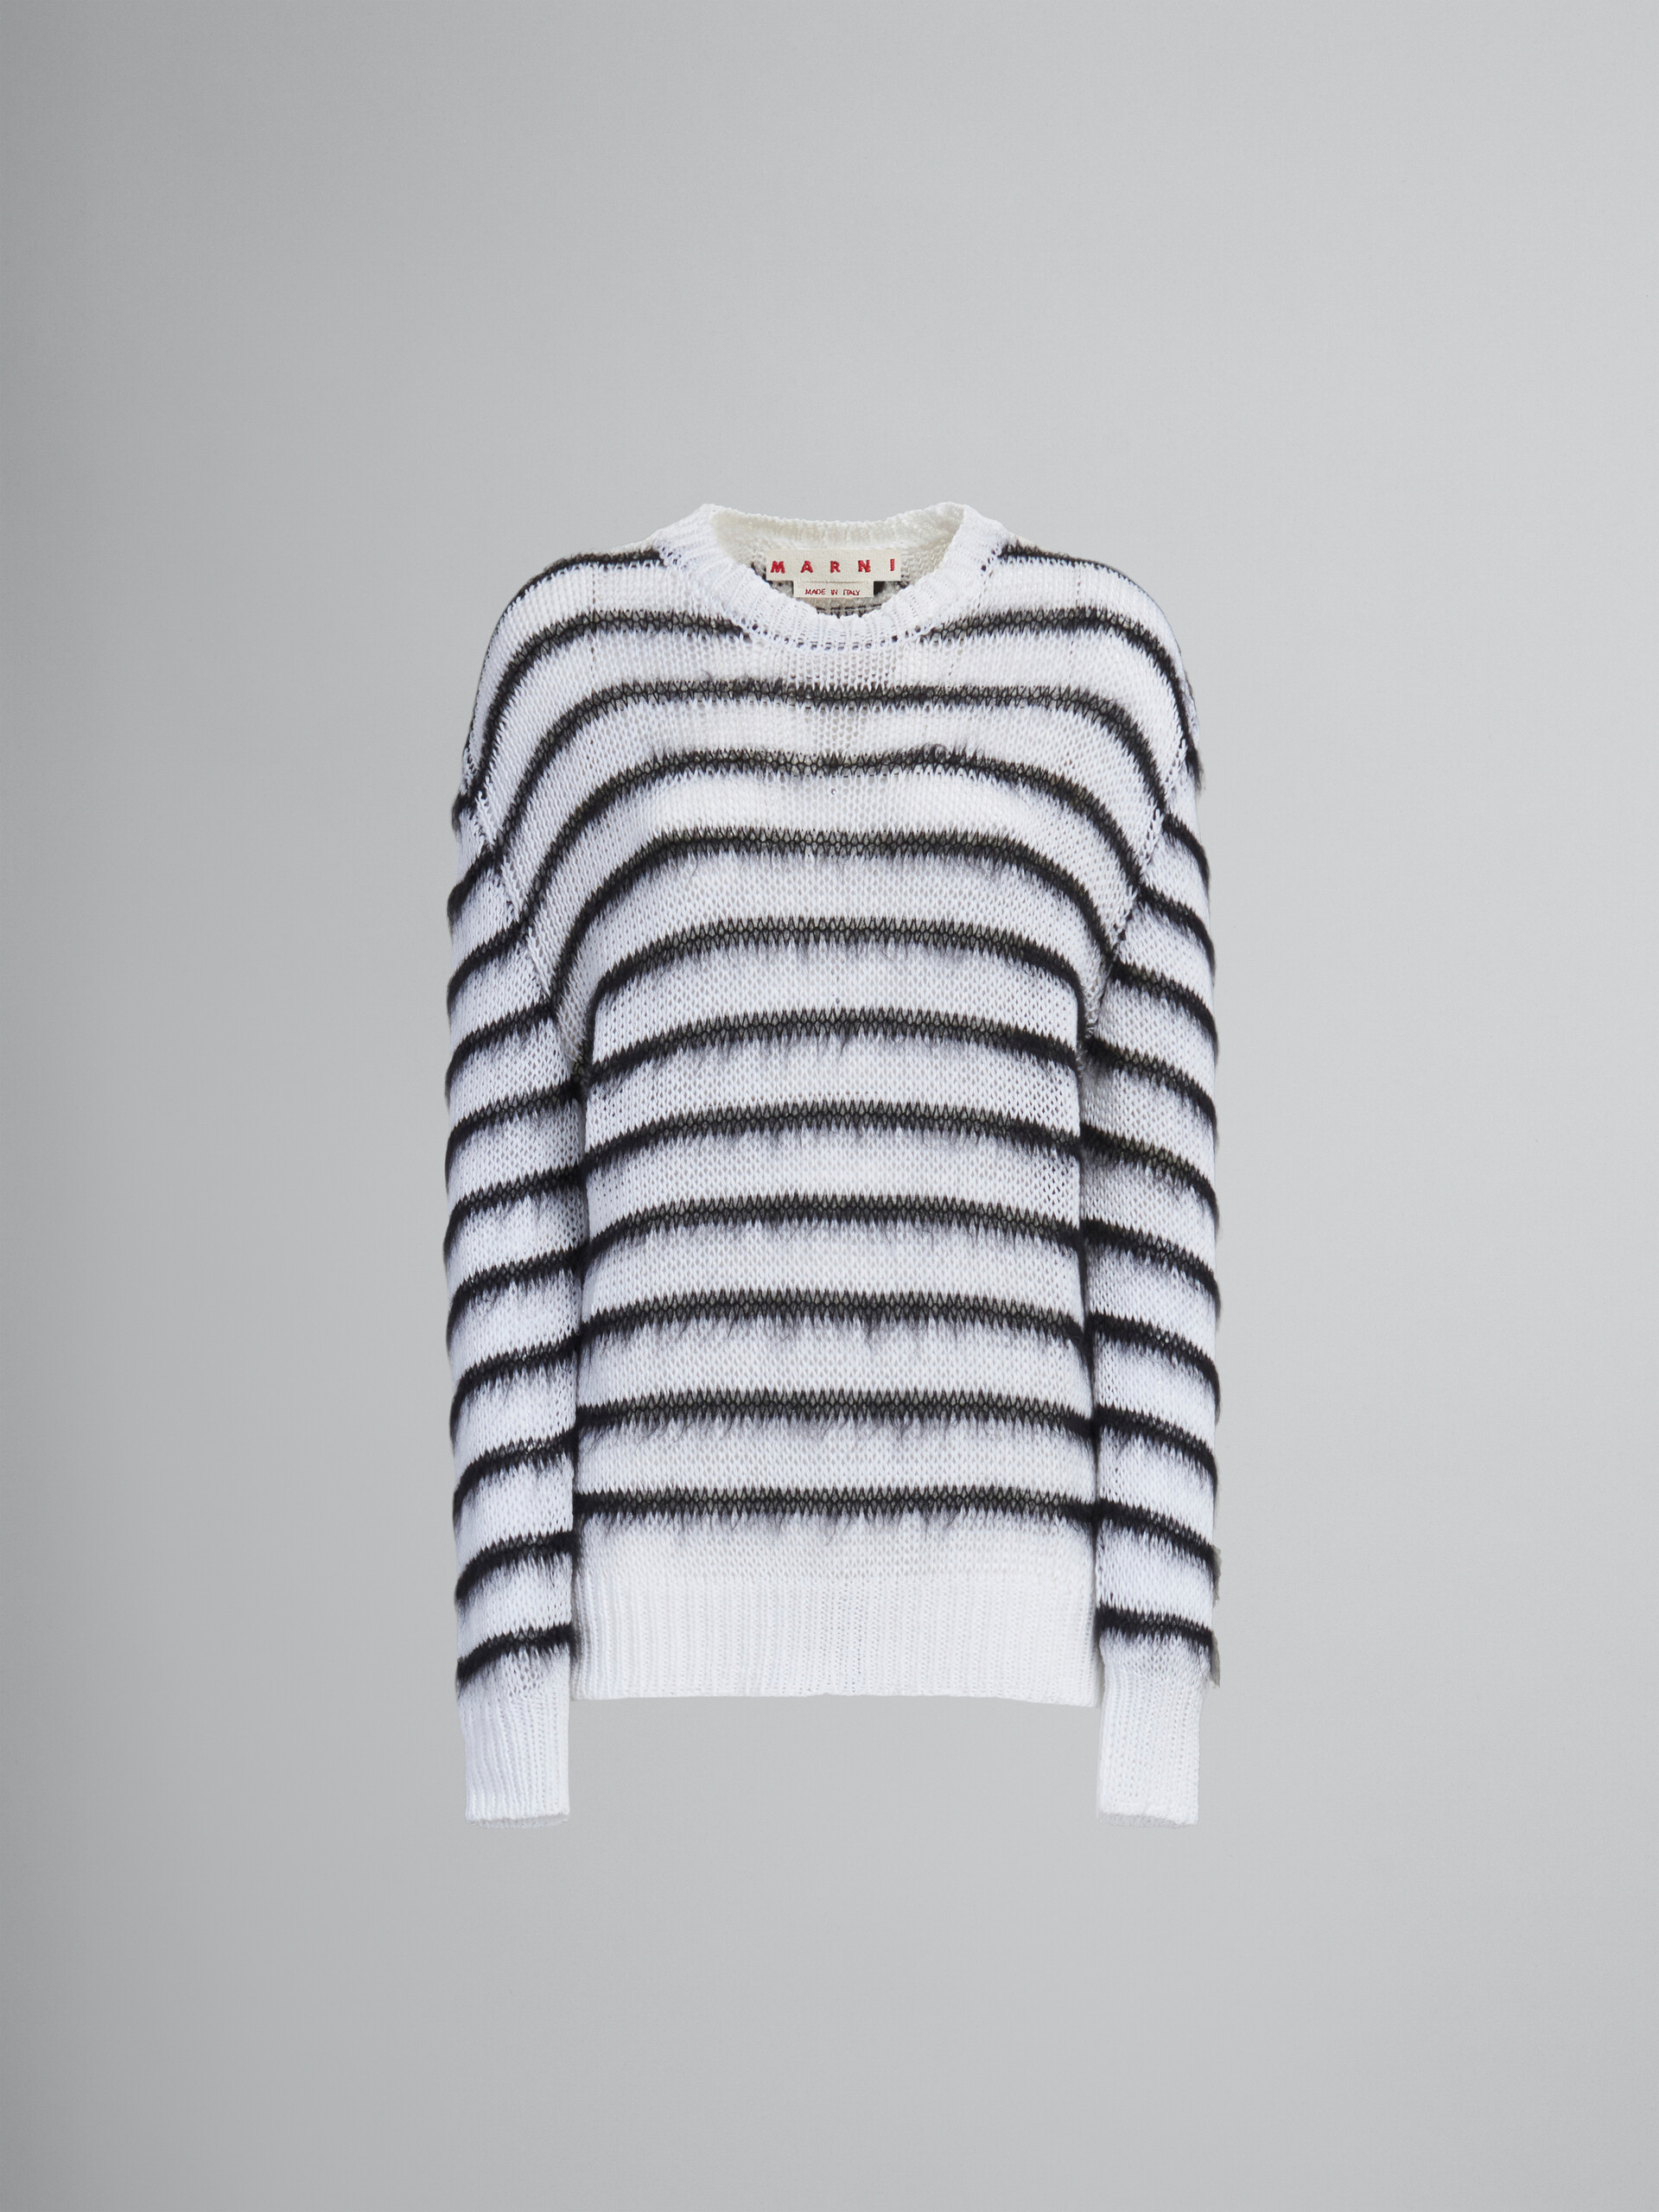 Weißer Pullover mit schwarzen Mohair-Streifen - Pullover - Image 1